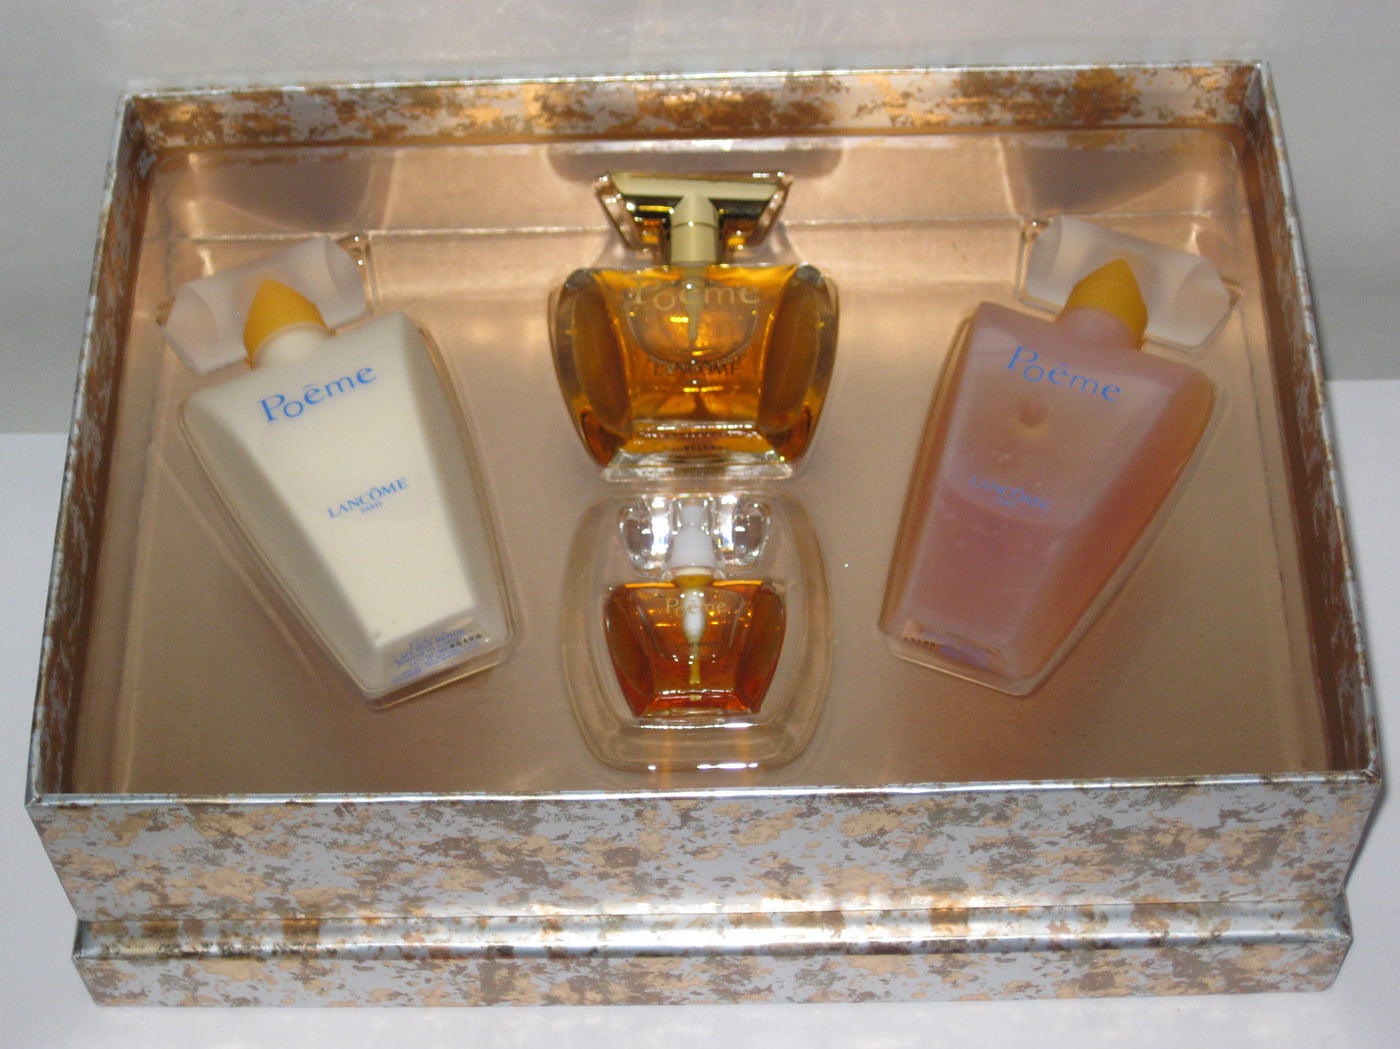 Lancome Poeme Perfume Gift Set